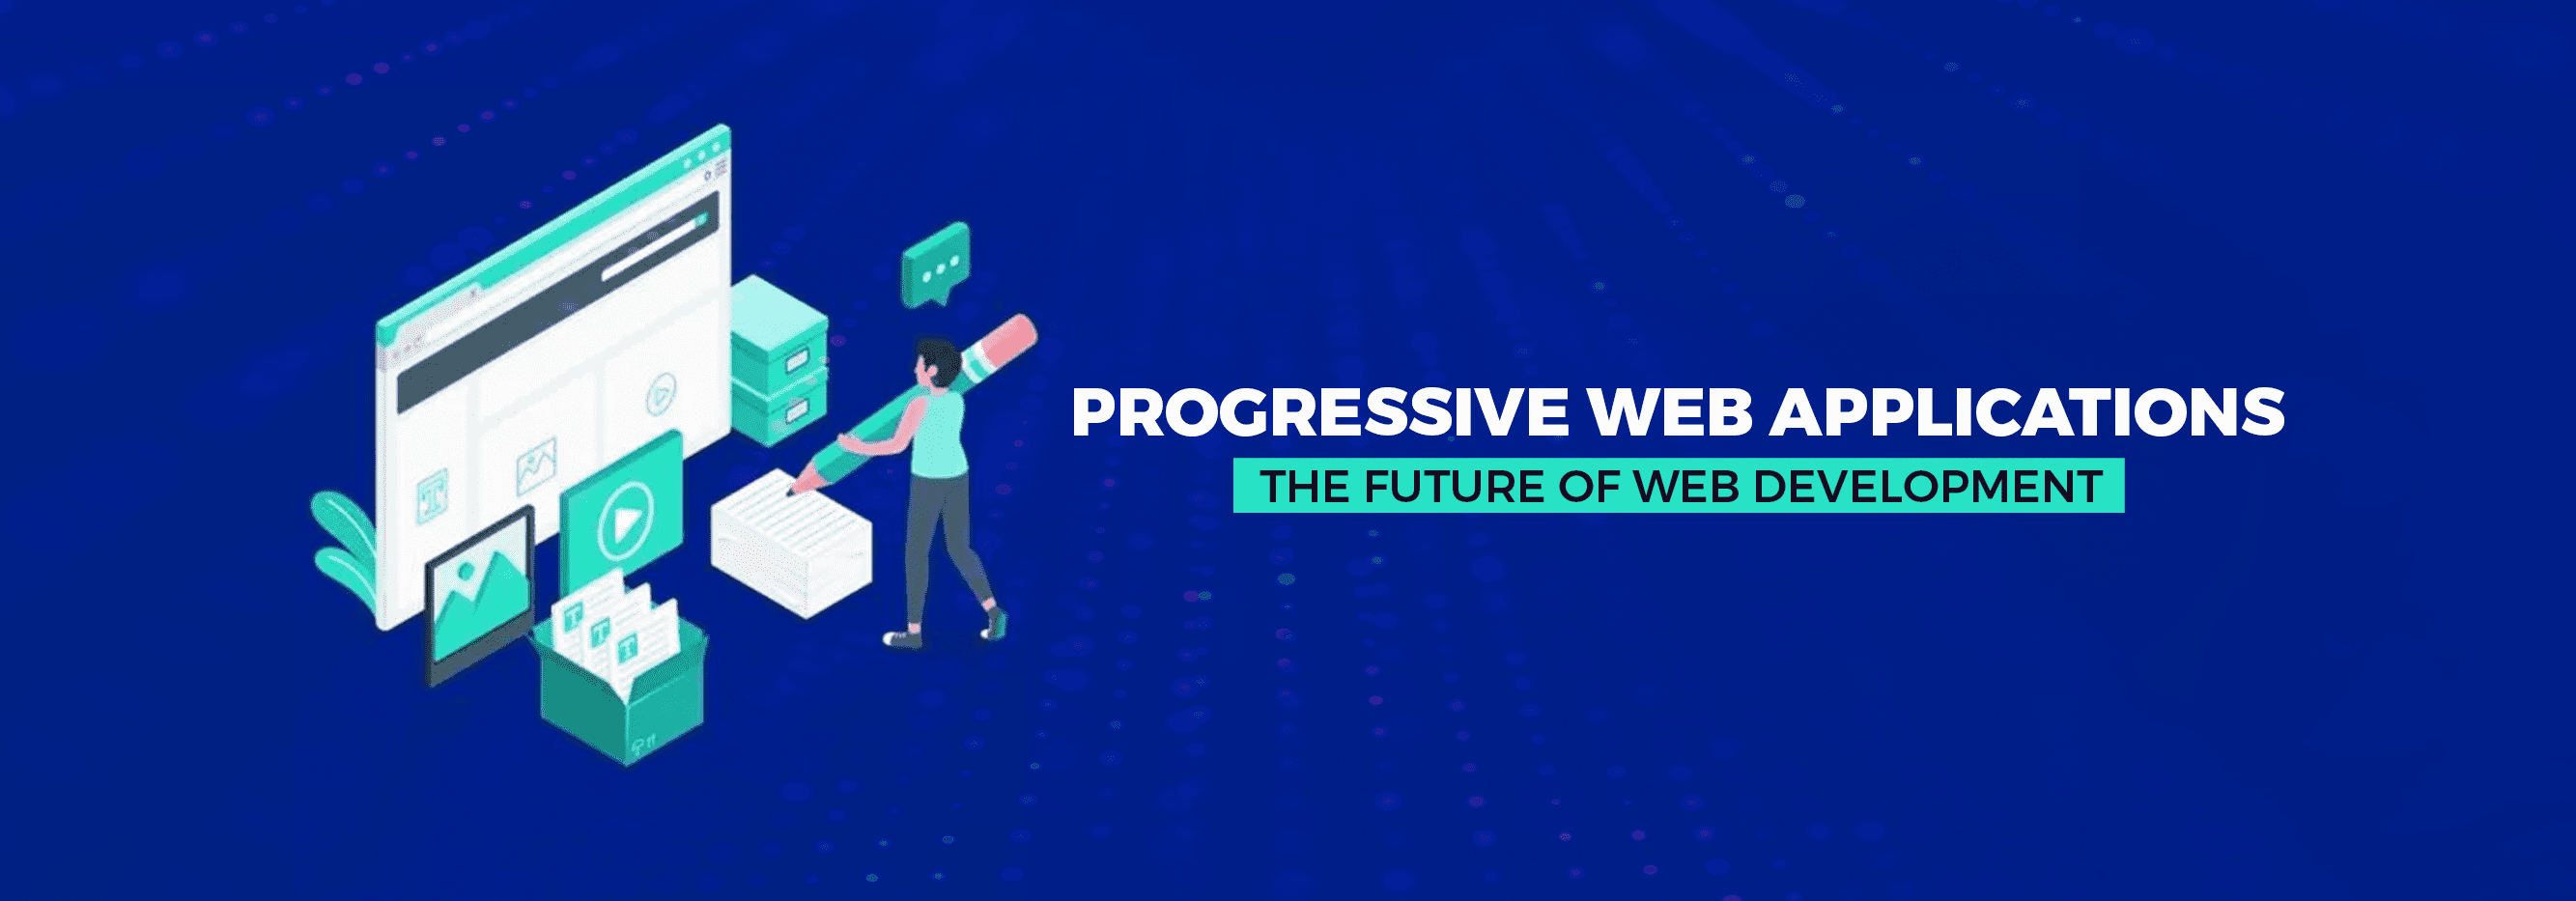 Progressive Web Applications – The Future of Web Development_banner